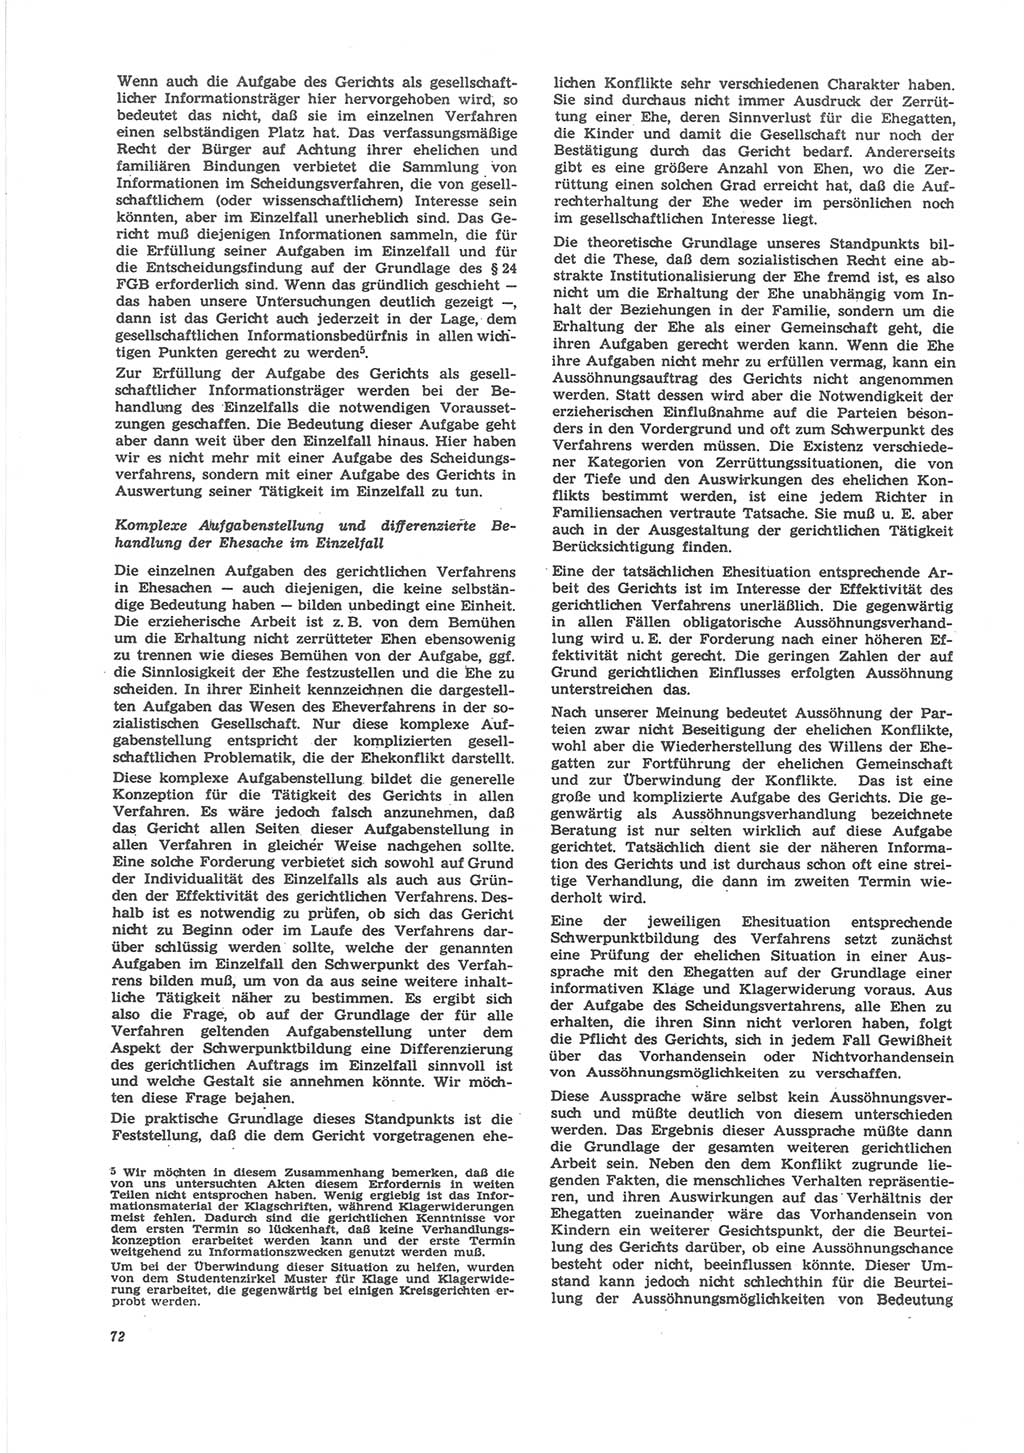 Neue Justiz (NJ), Zeitschrift für Recht und Rechtswissenschaft [Deutsche Demokratische Republik (DDR)], 24. Jahrgang 1970, Seite 72 (NJ DDR 1970, S. 72)